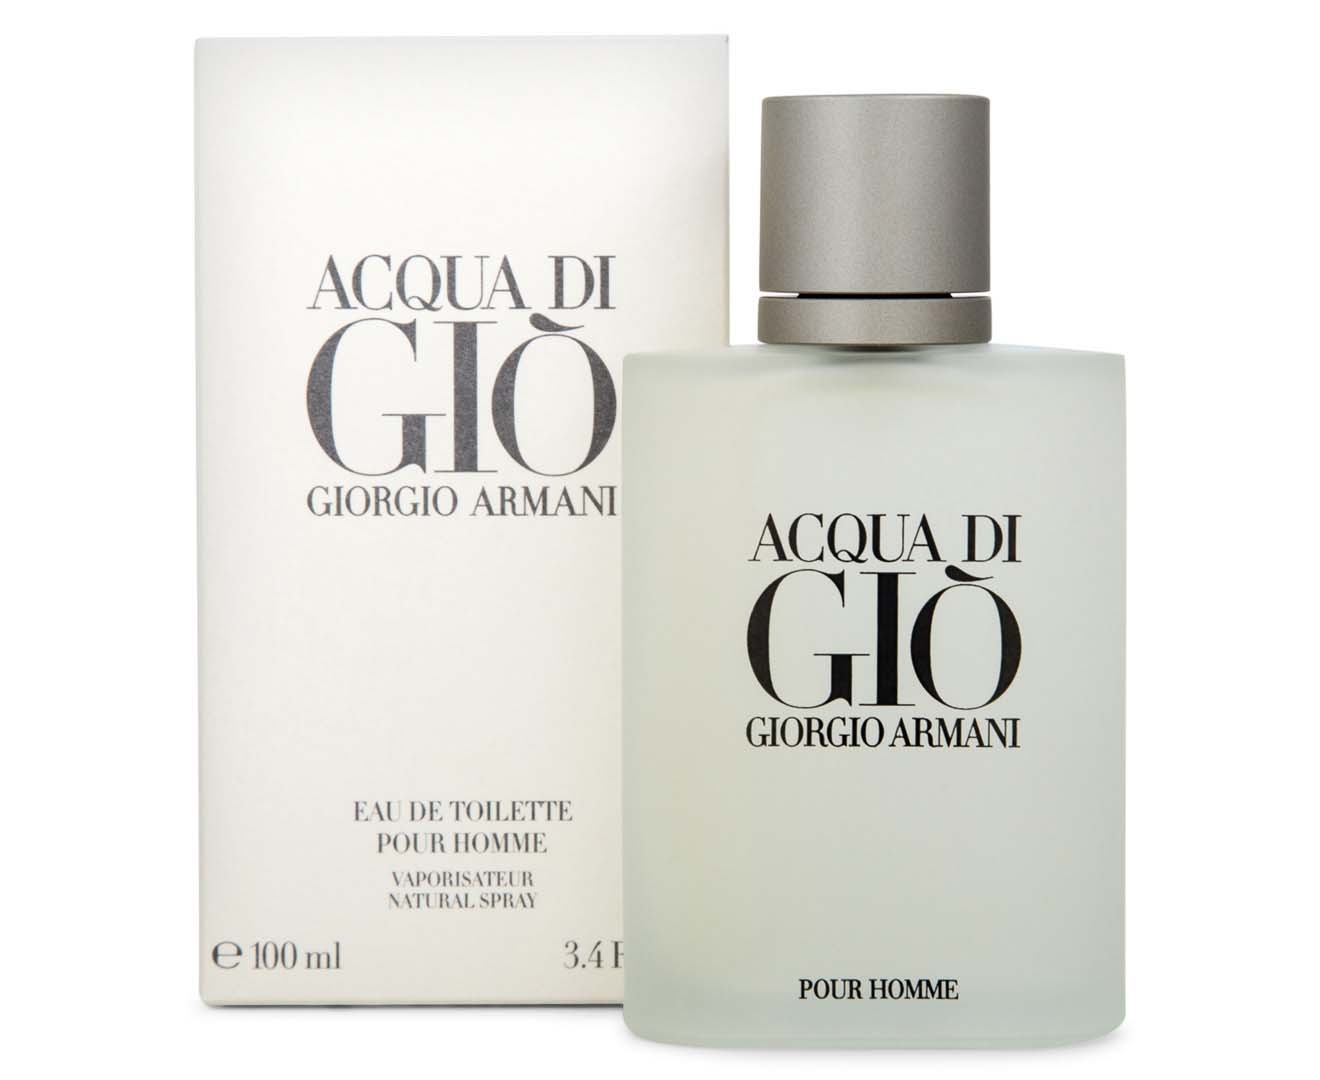 Giorgio Armani Acqua Di Giò For Men EDT Perfume 100mL 